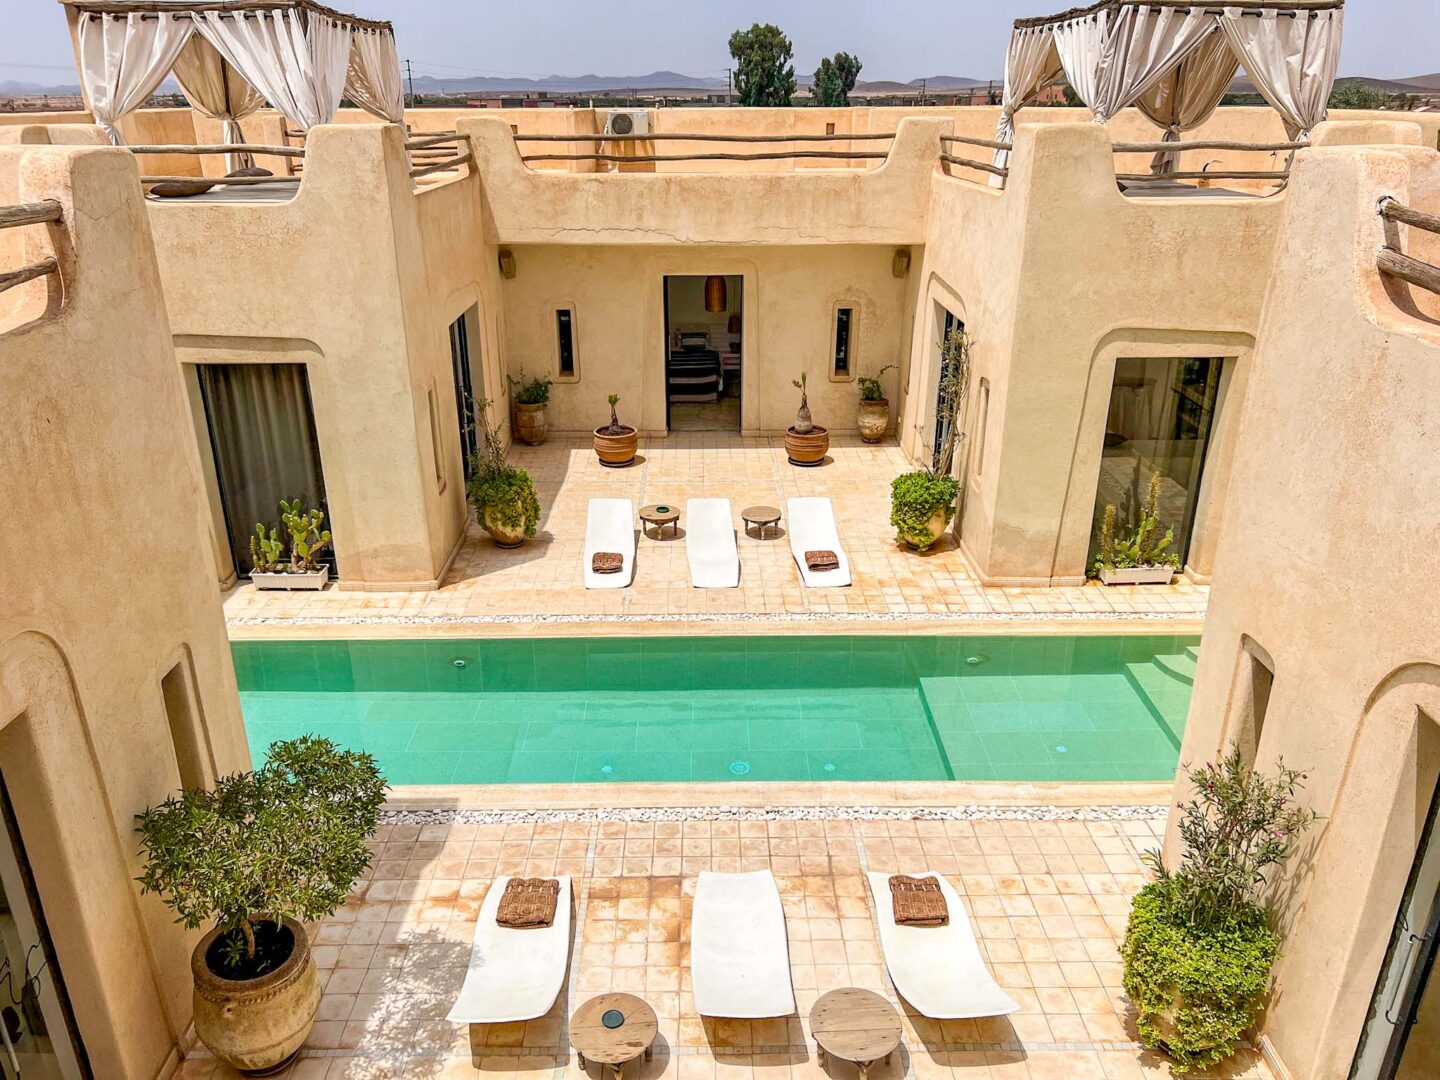 Private villa in Marrakech will pool